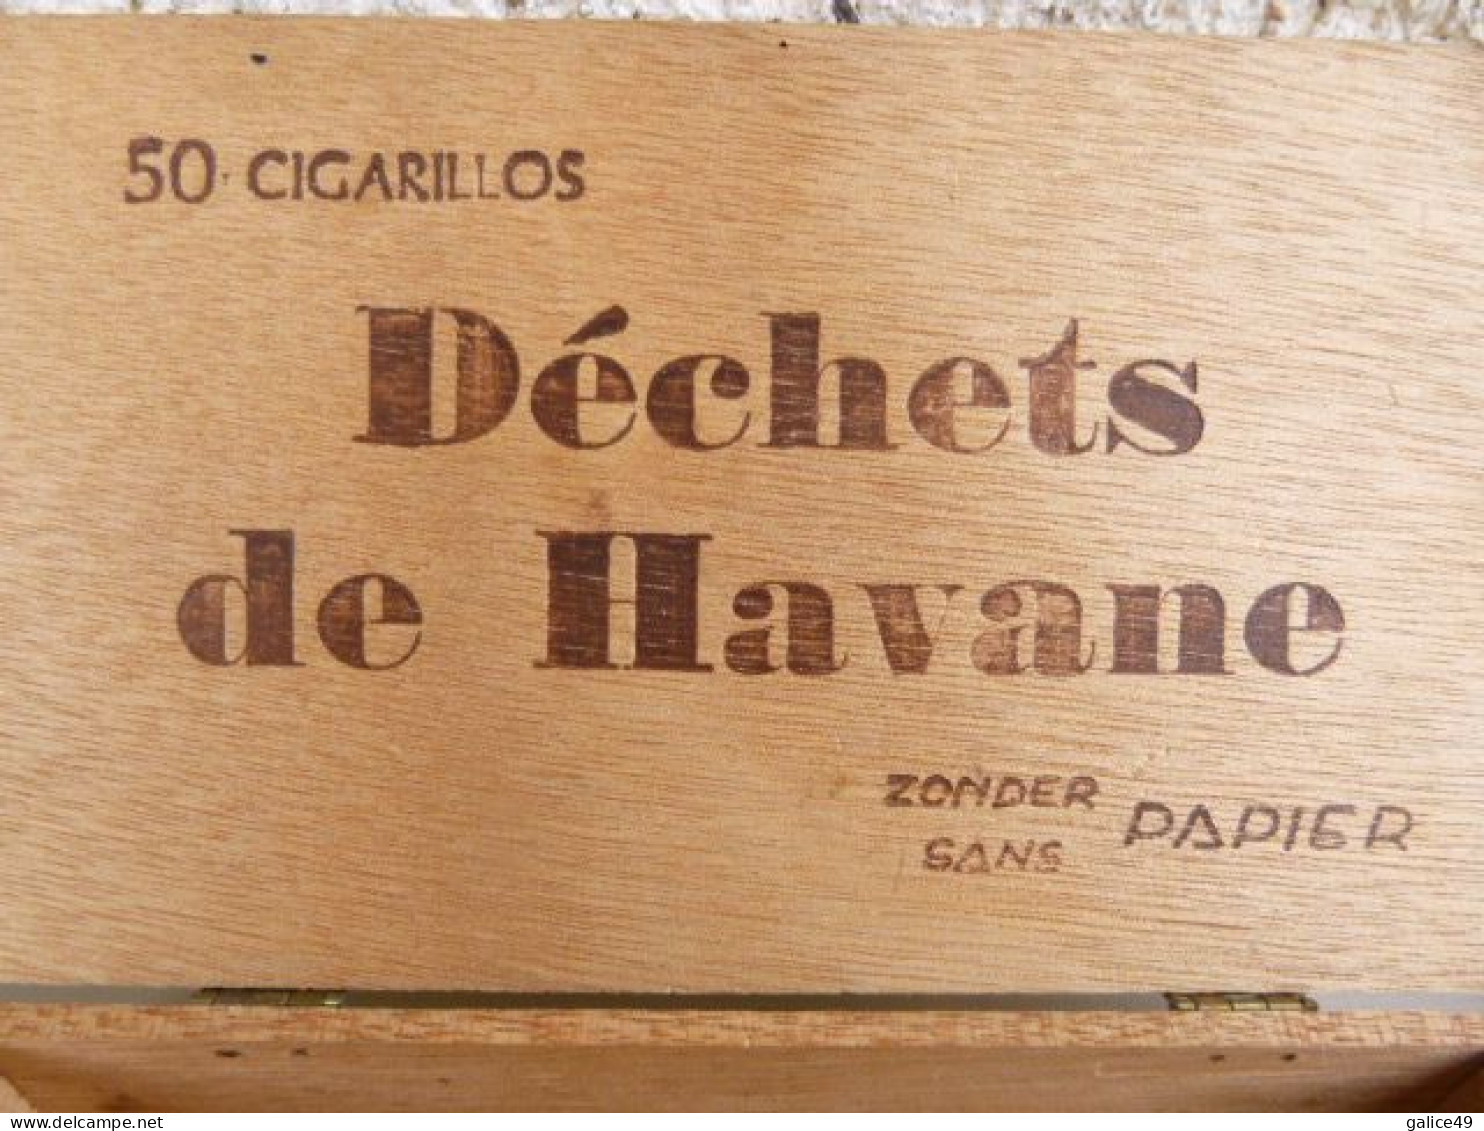 Boite En Bois Vide Déchets De Havane - Autres & Non Classés